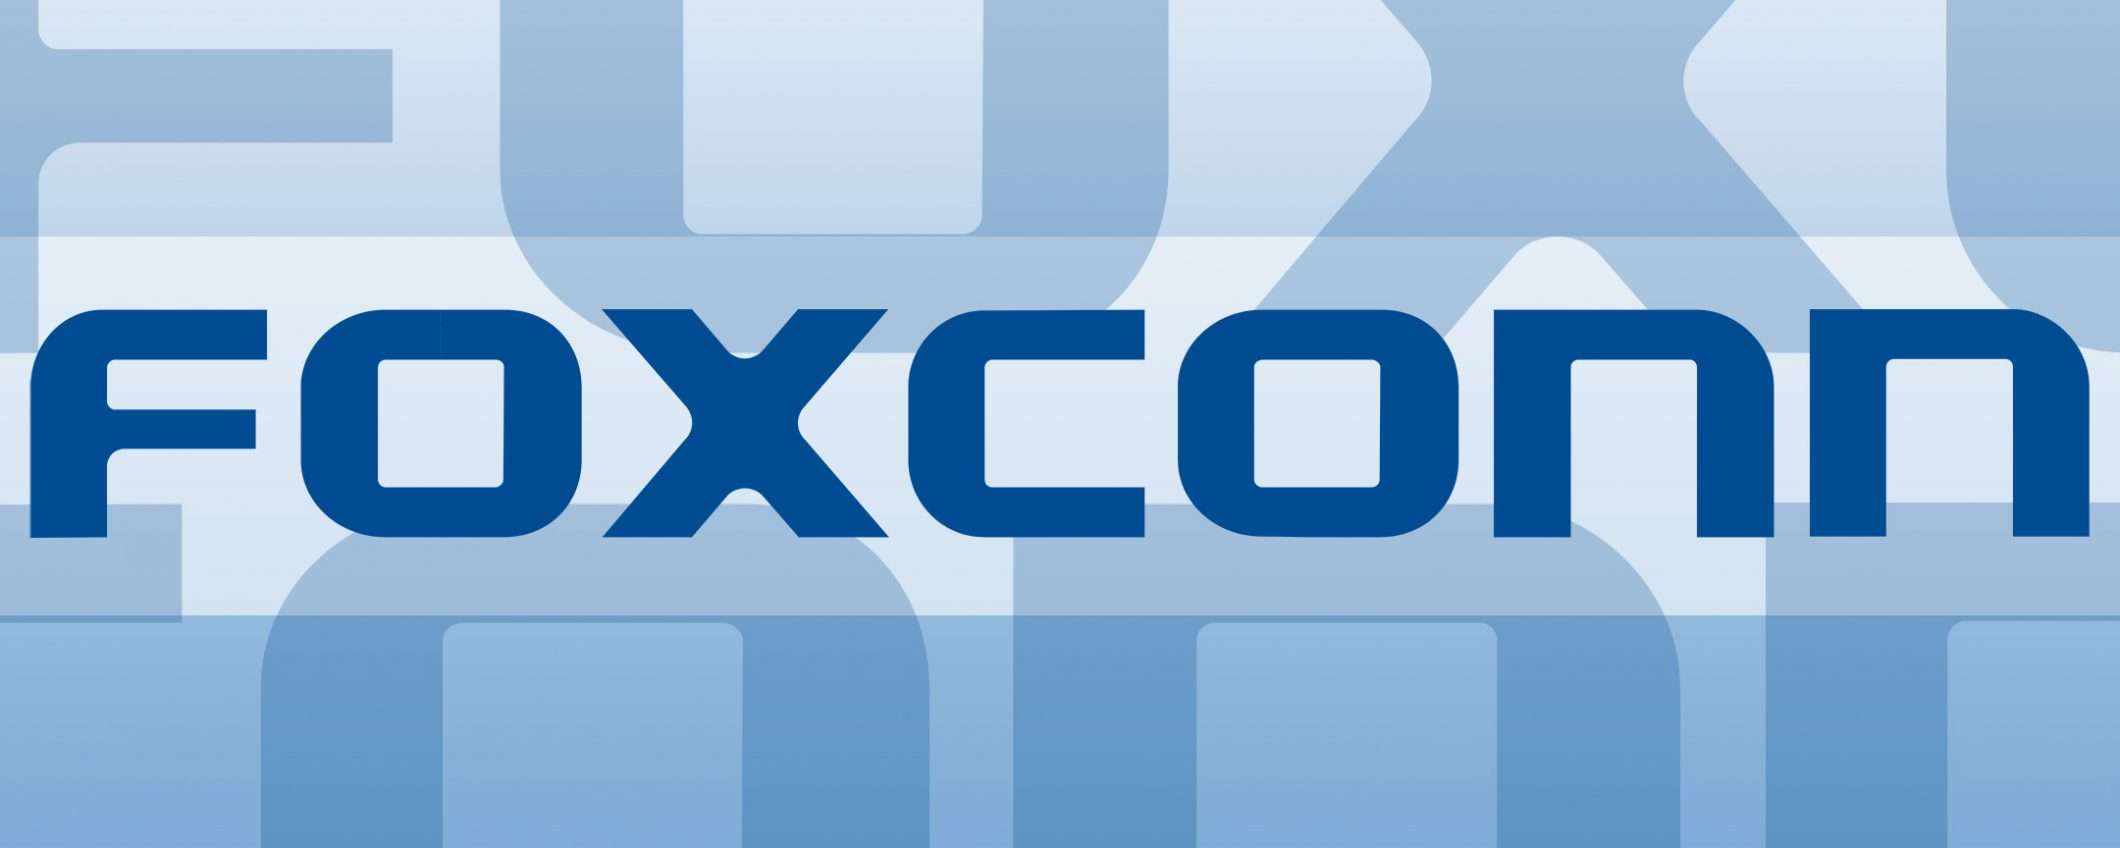 Foxconn, produzione crollata del 90%